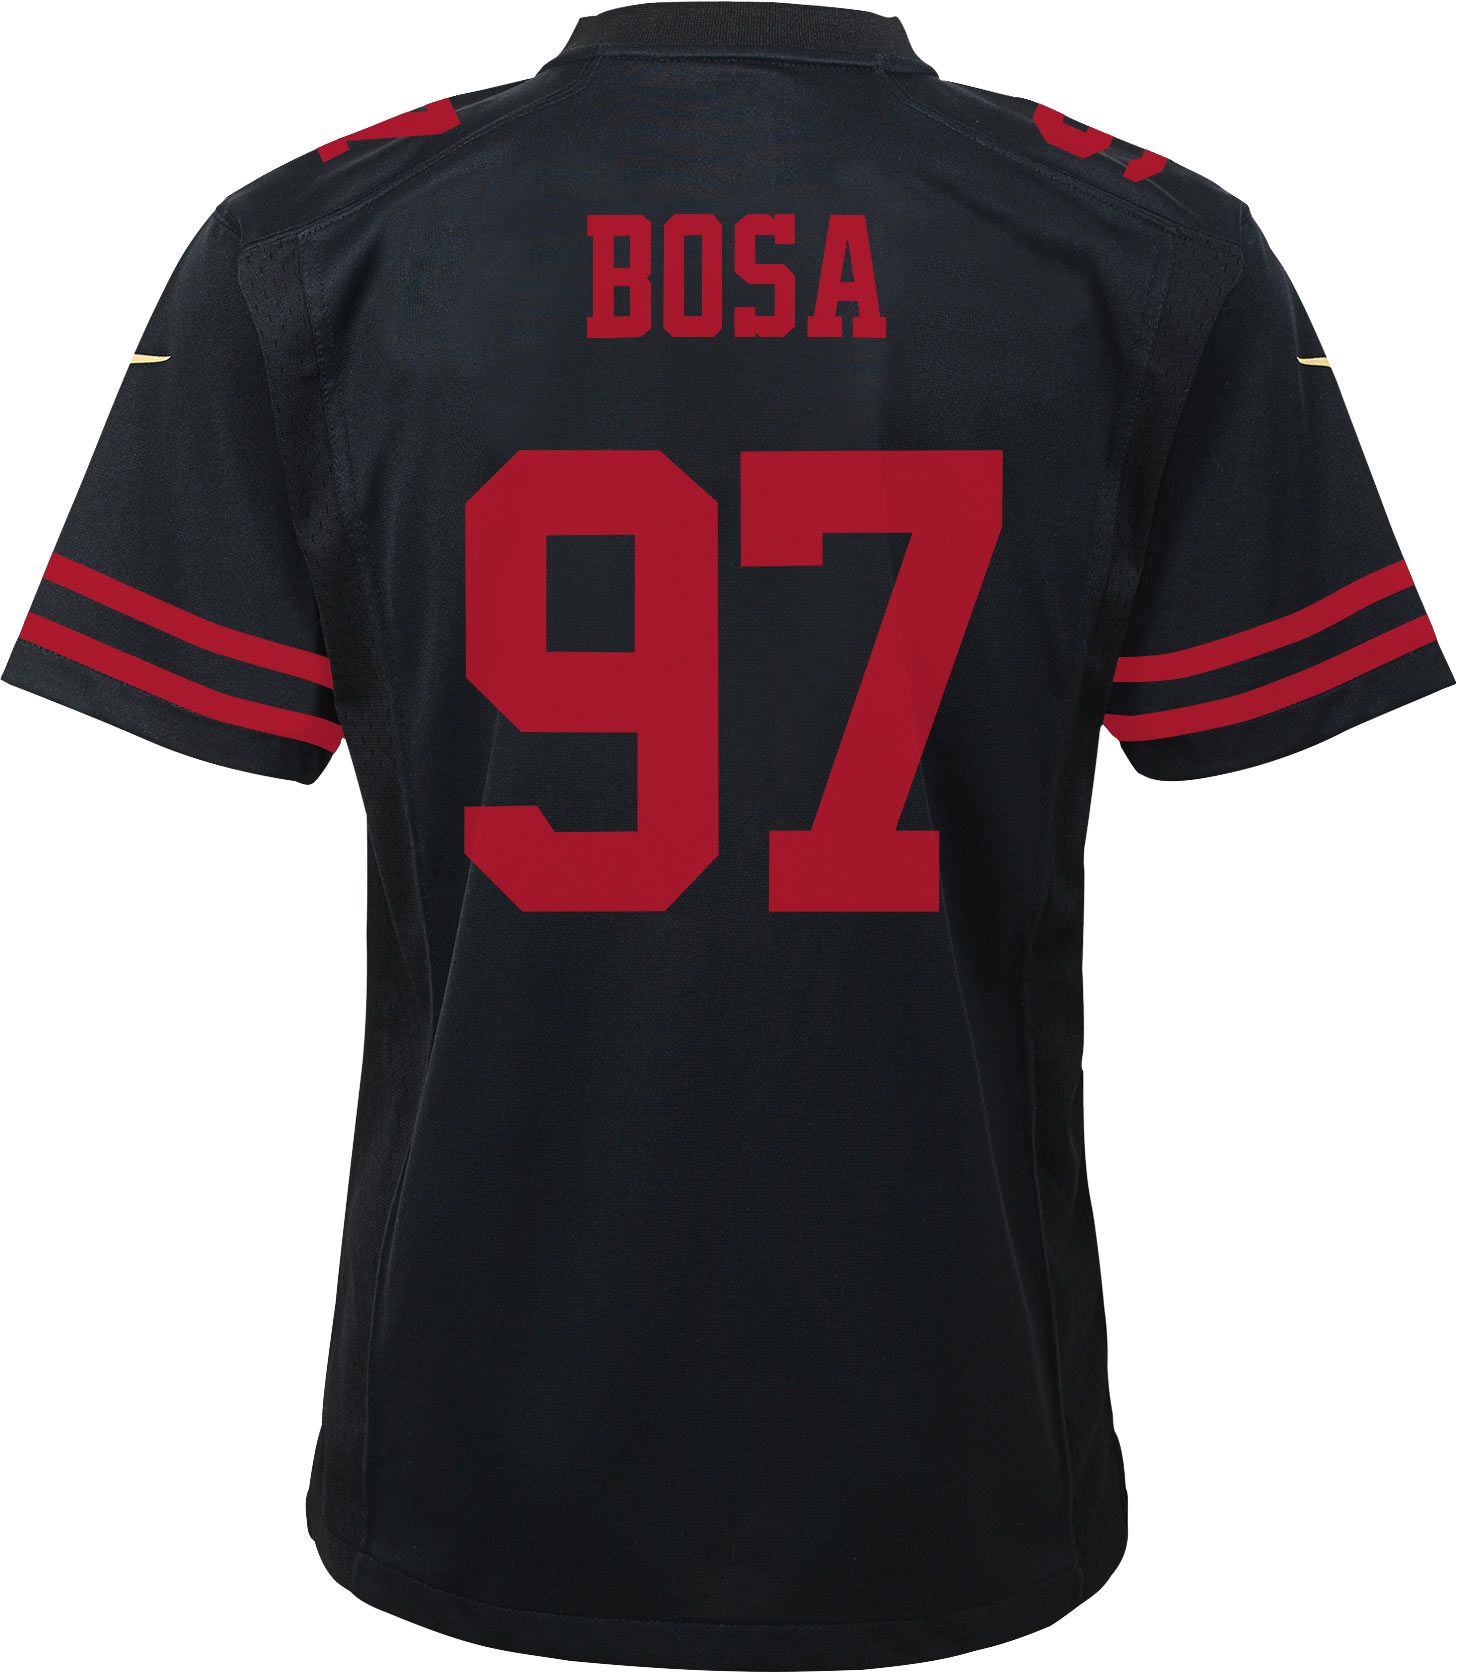 black 49ers bosa jersey